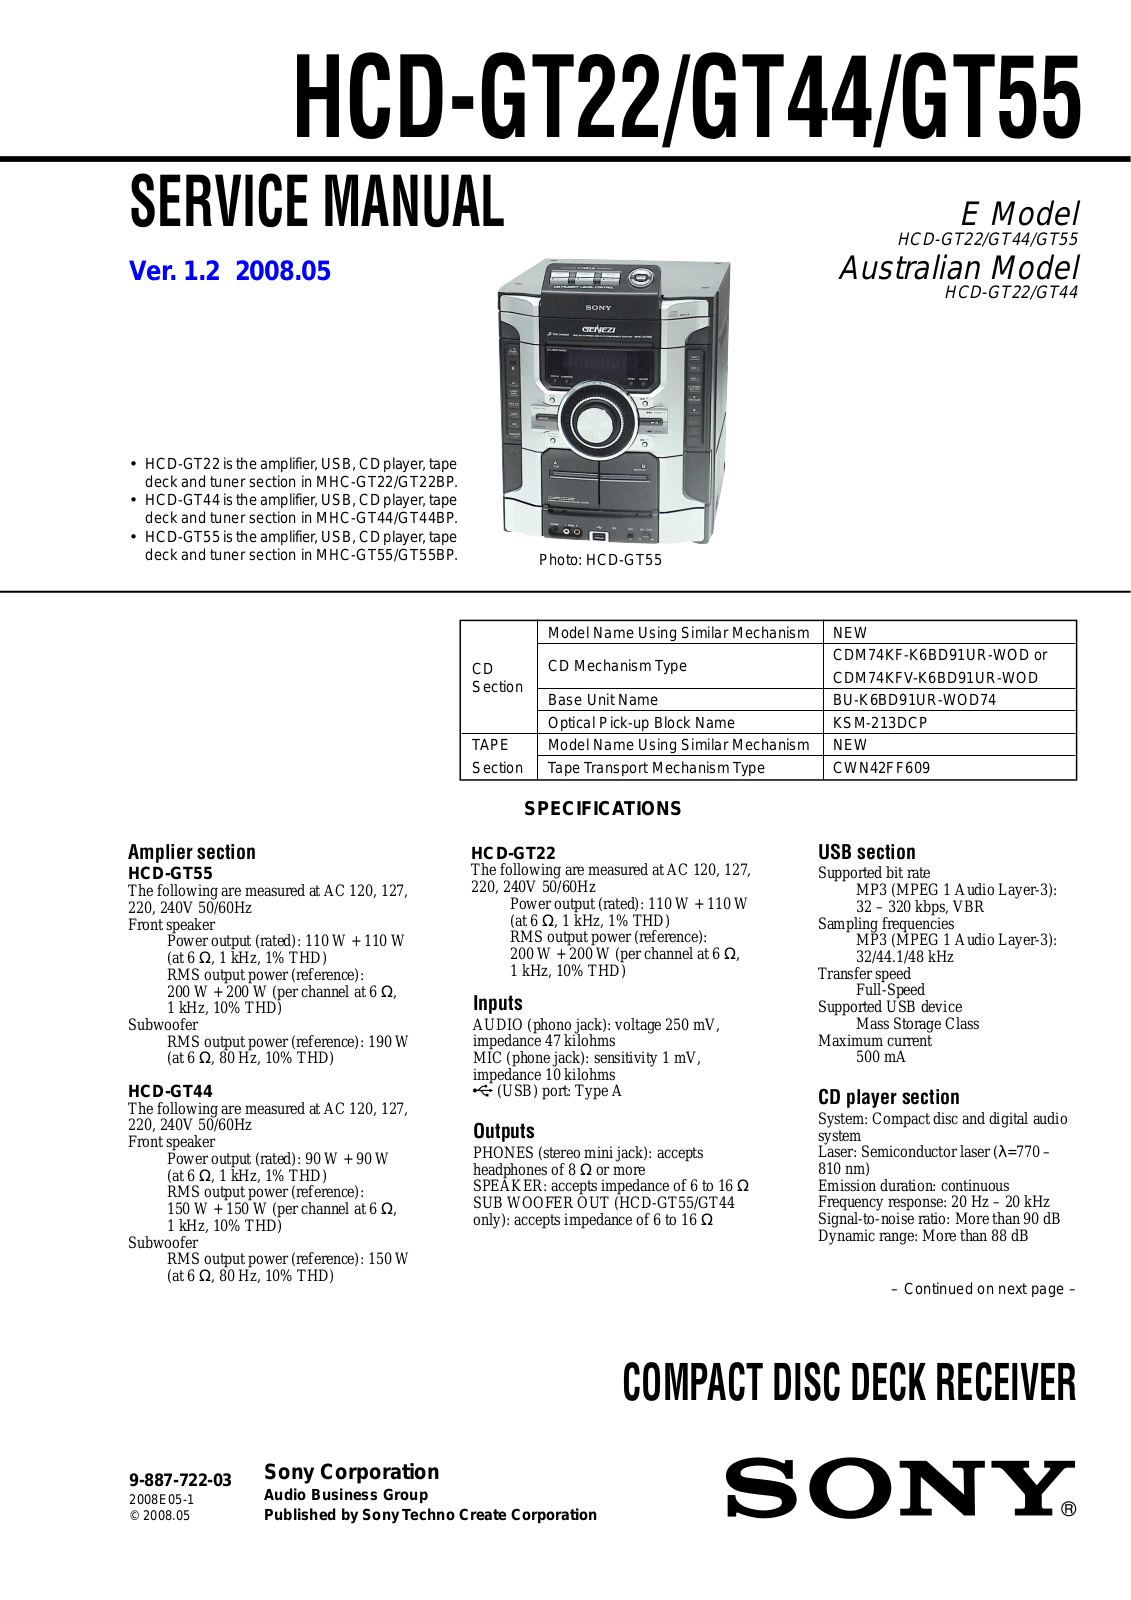 Sony HCD-GT22, HCD-GT55, HCD-GT44 User Manual